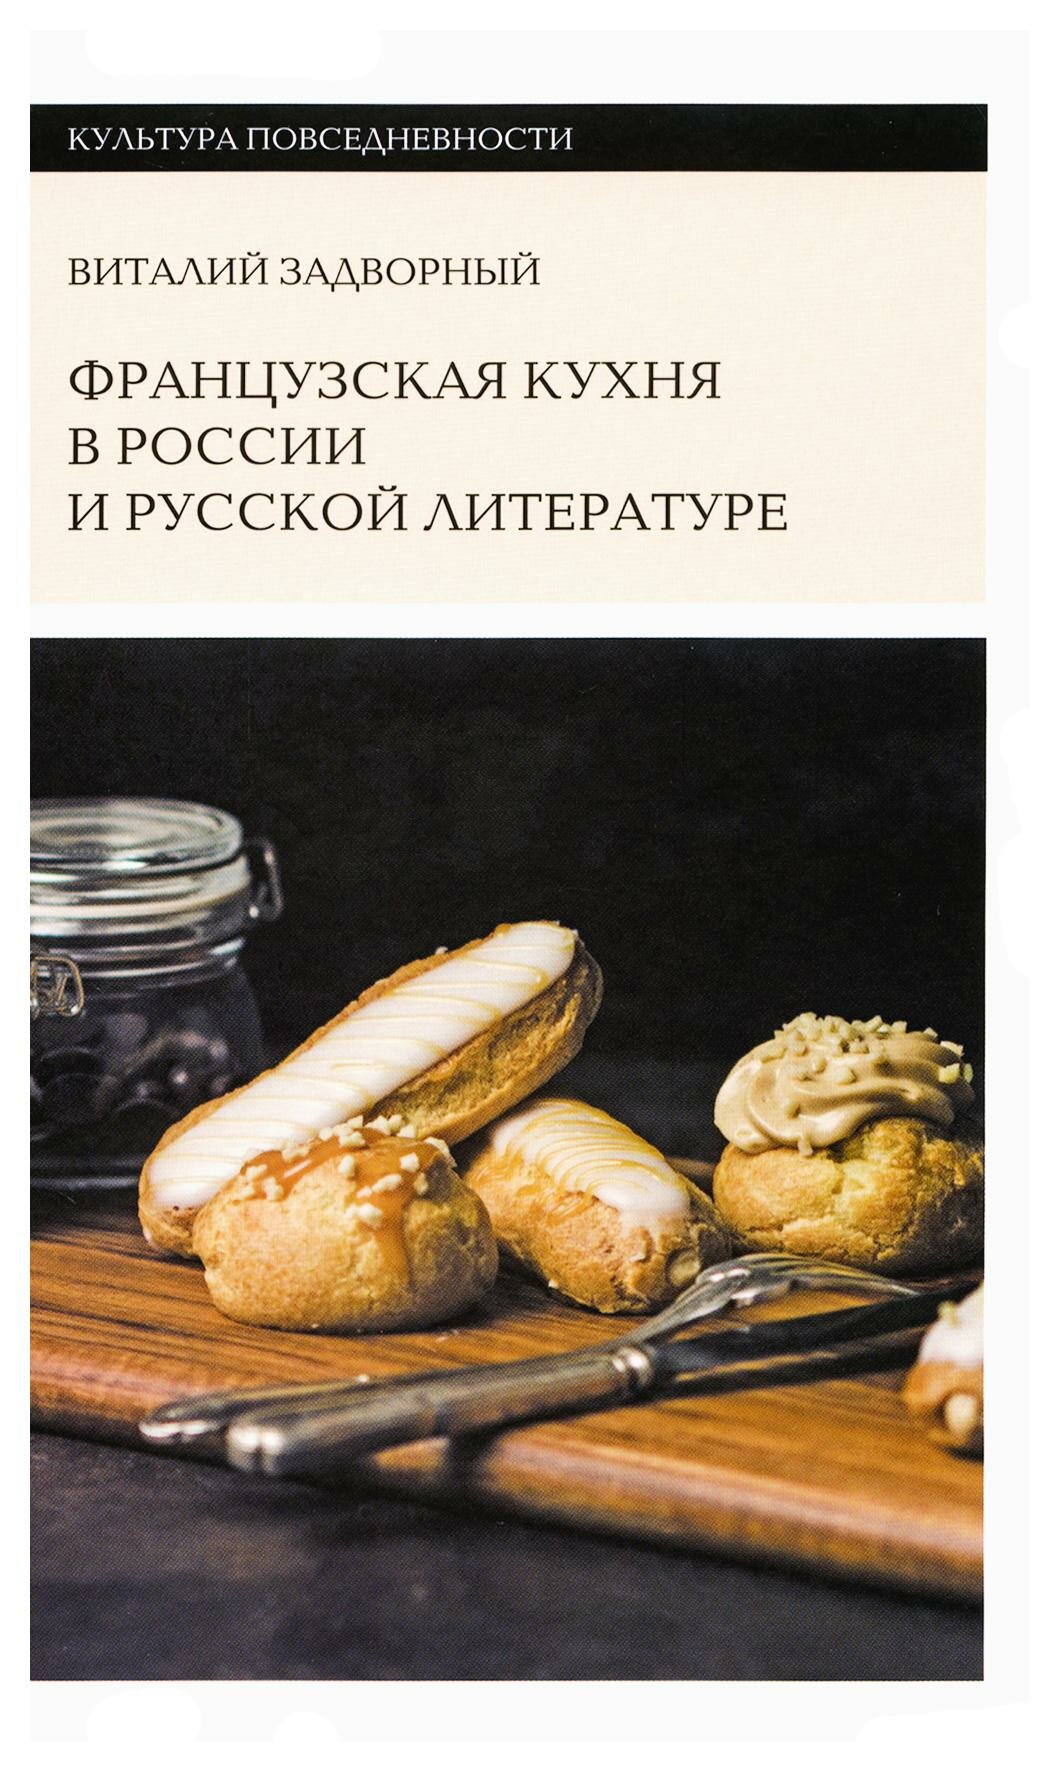 Французская кухня в России и русской литературе - фото №1